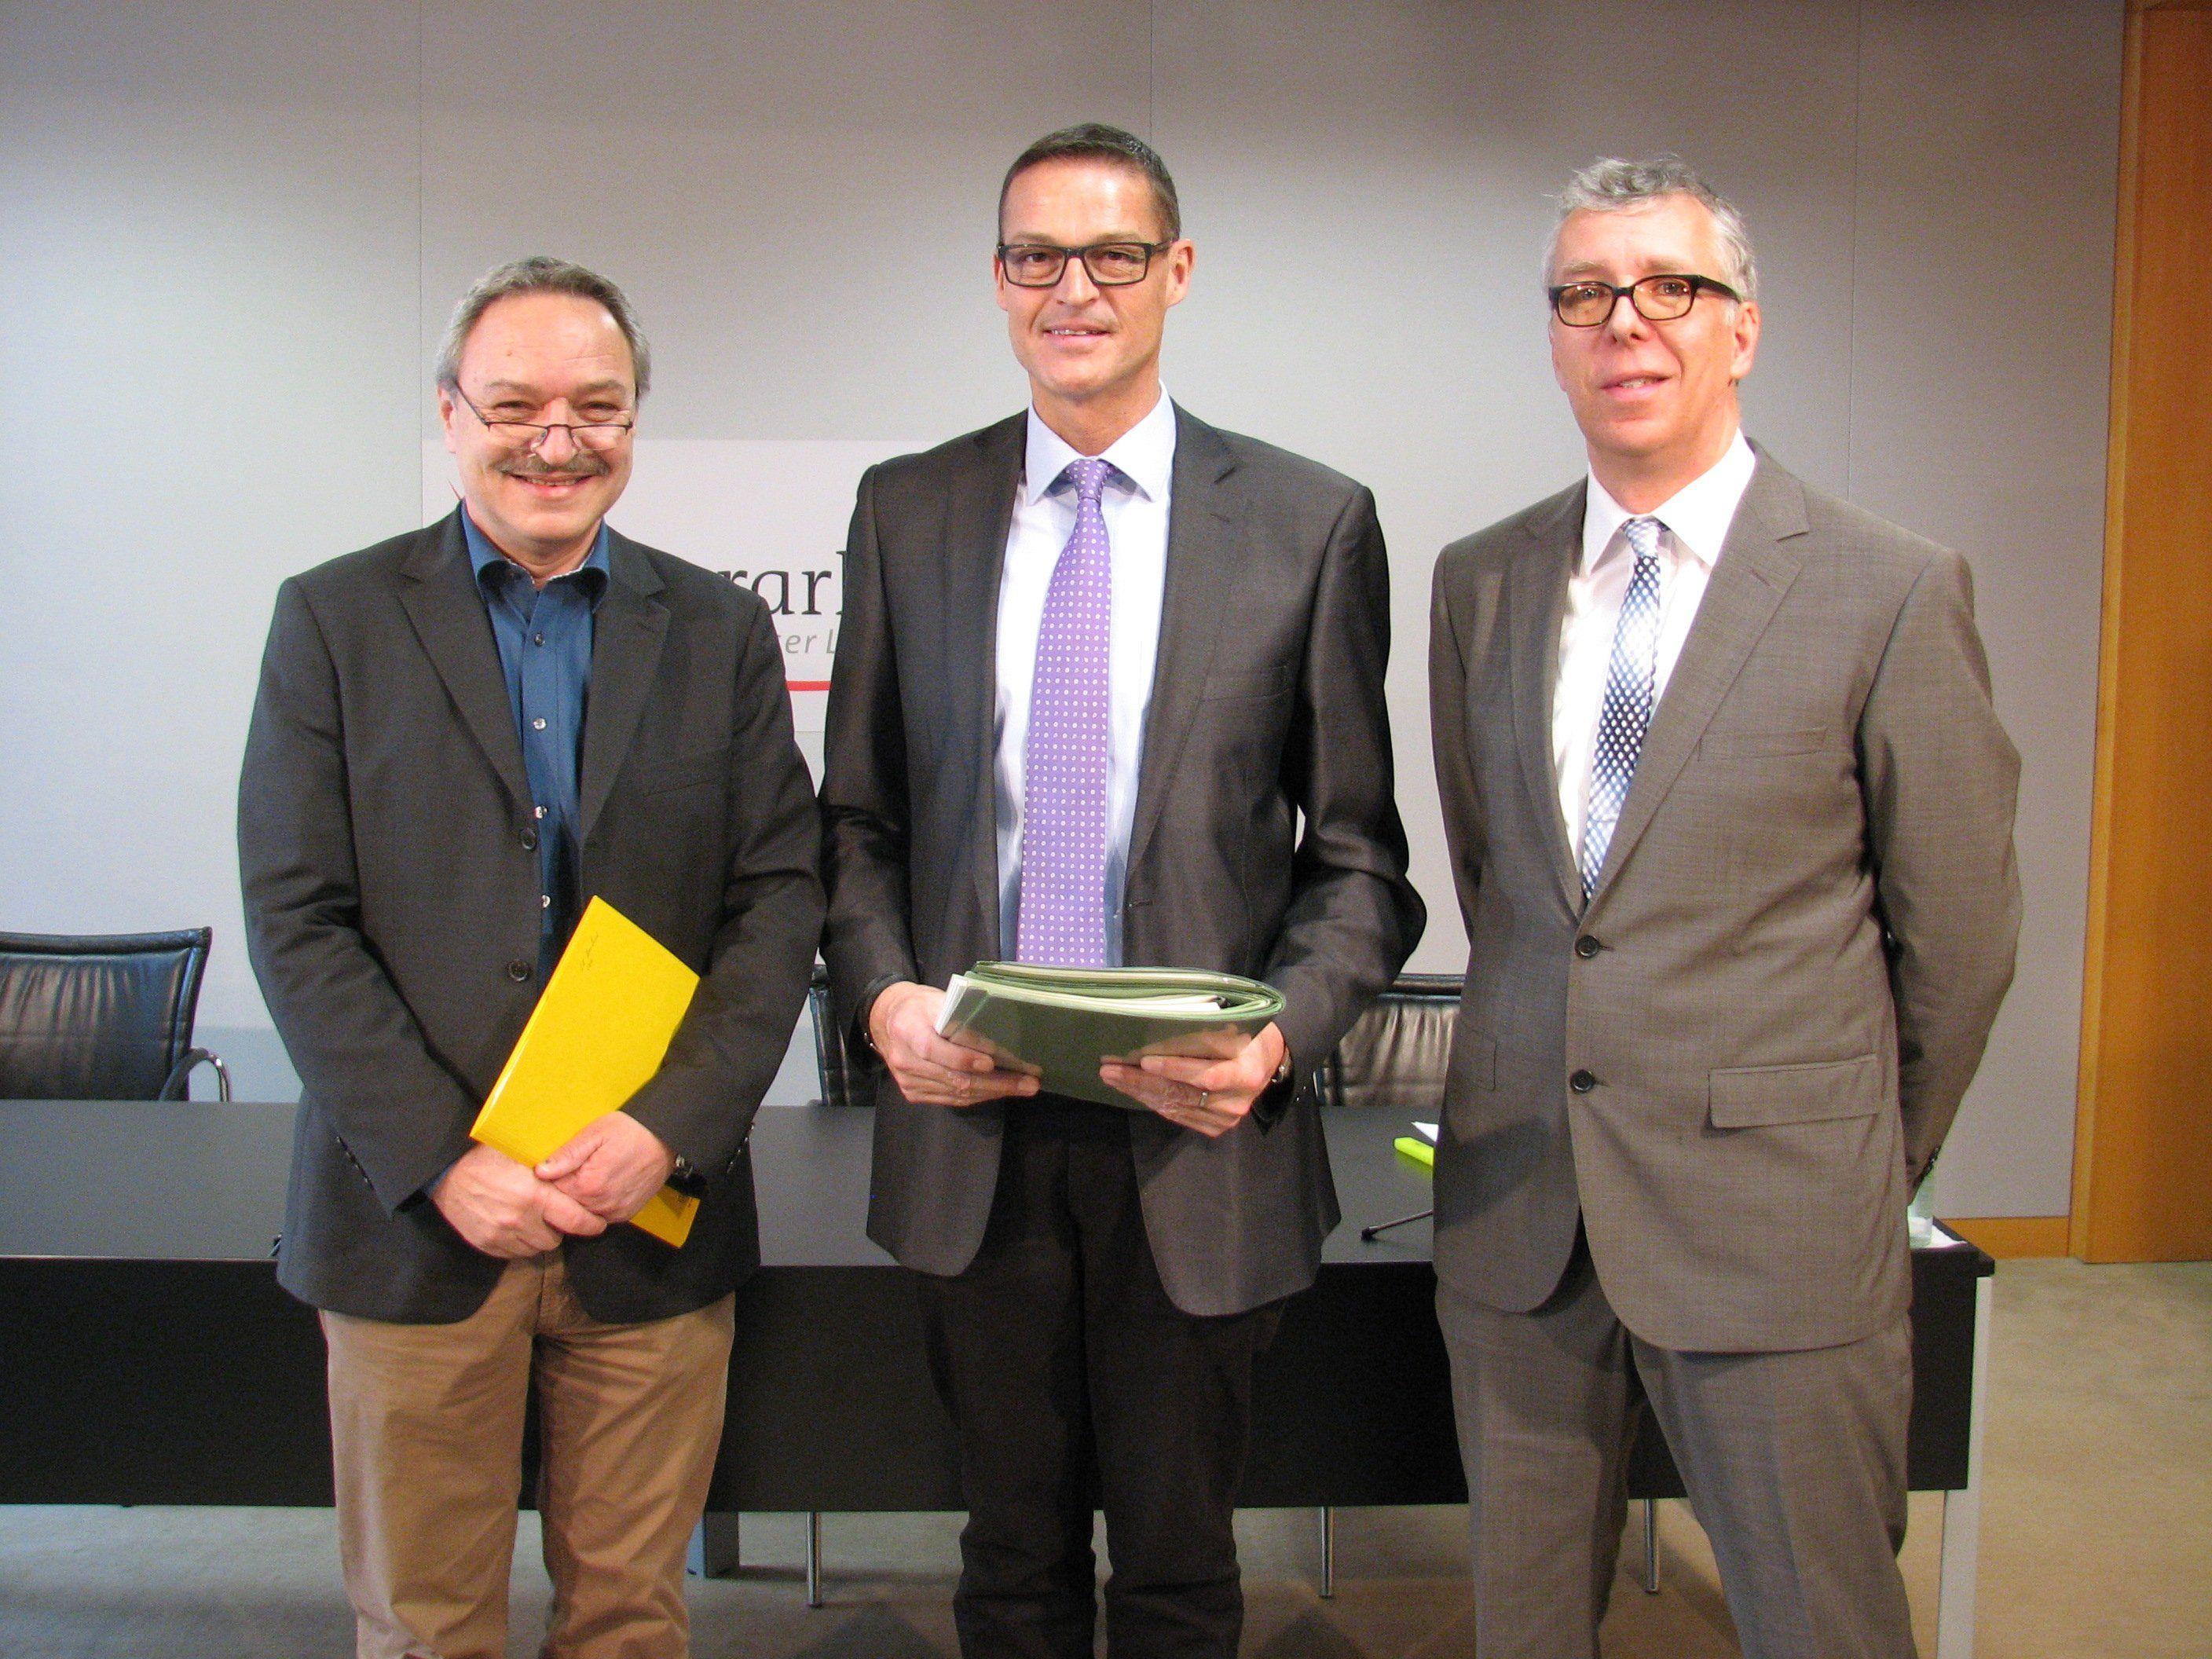 Landesrat Bernhard sowie Dietmar Buhmann und Bernhard Zainer vom Umweltinstitut präsentierten die Bilanz 2014 der amtlichen Lebensmittelkontrolle in Vorarlberg.